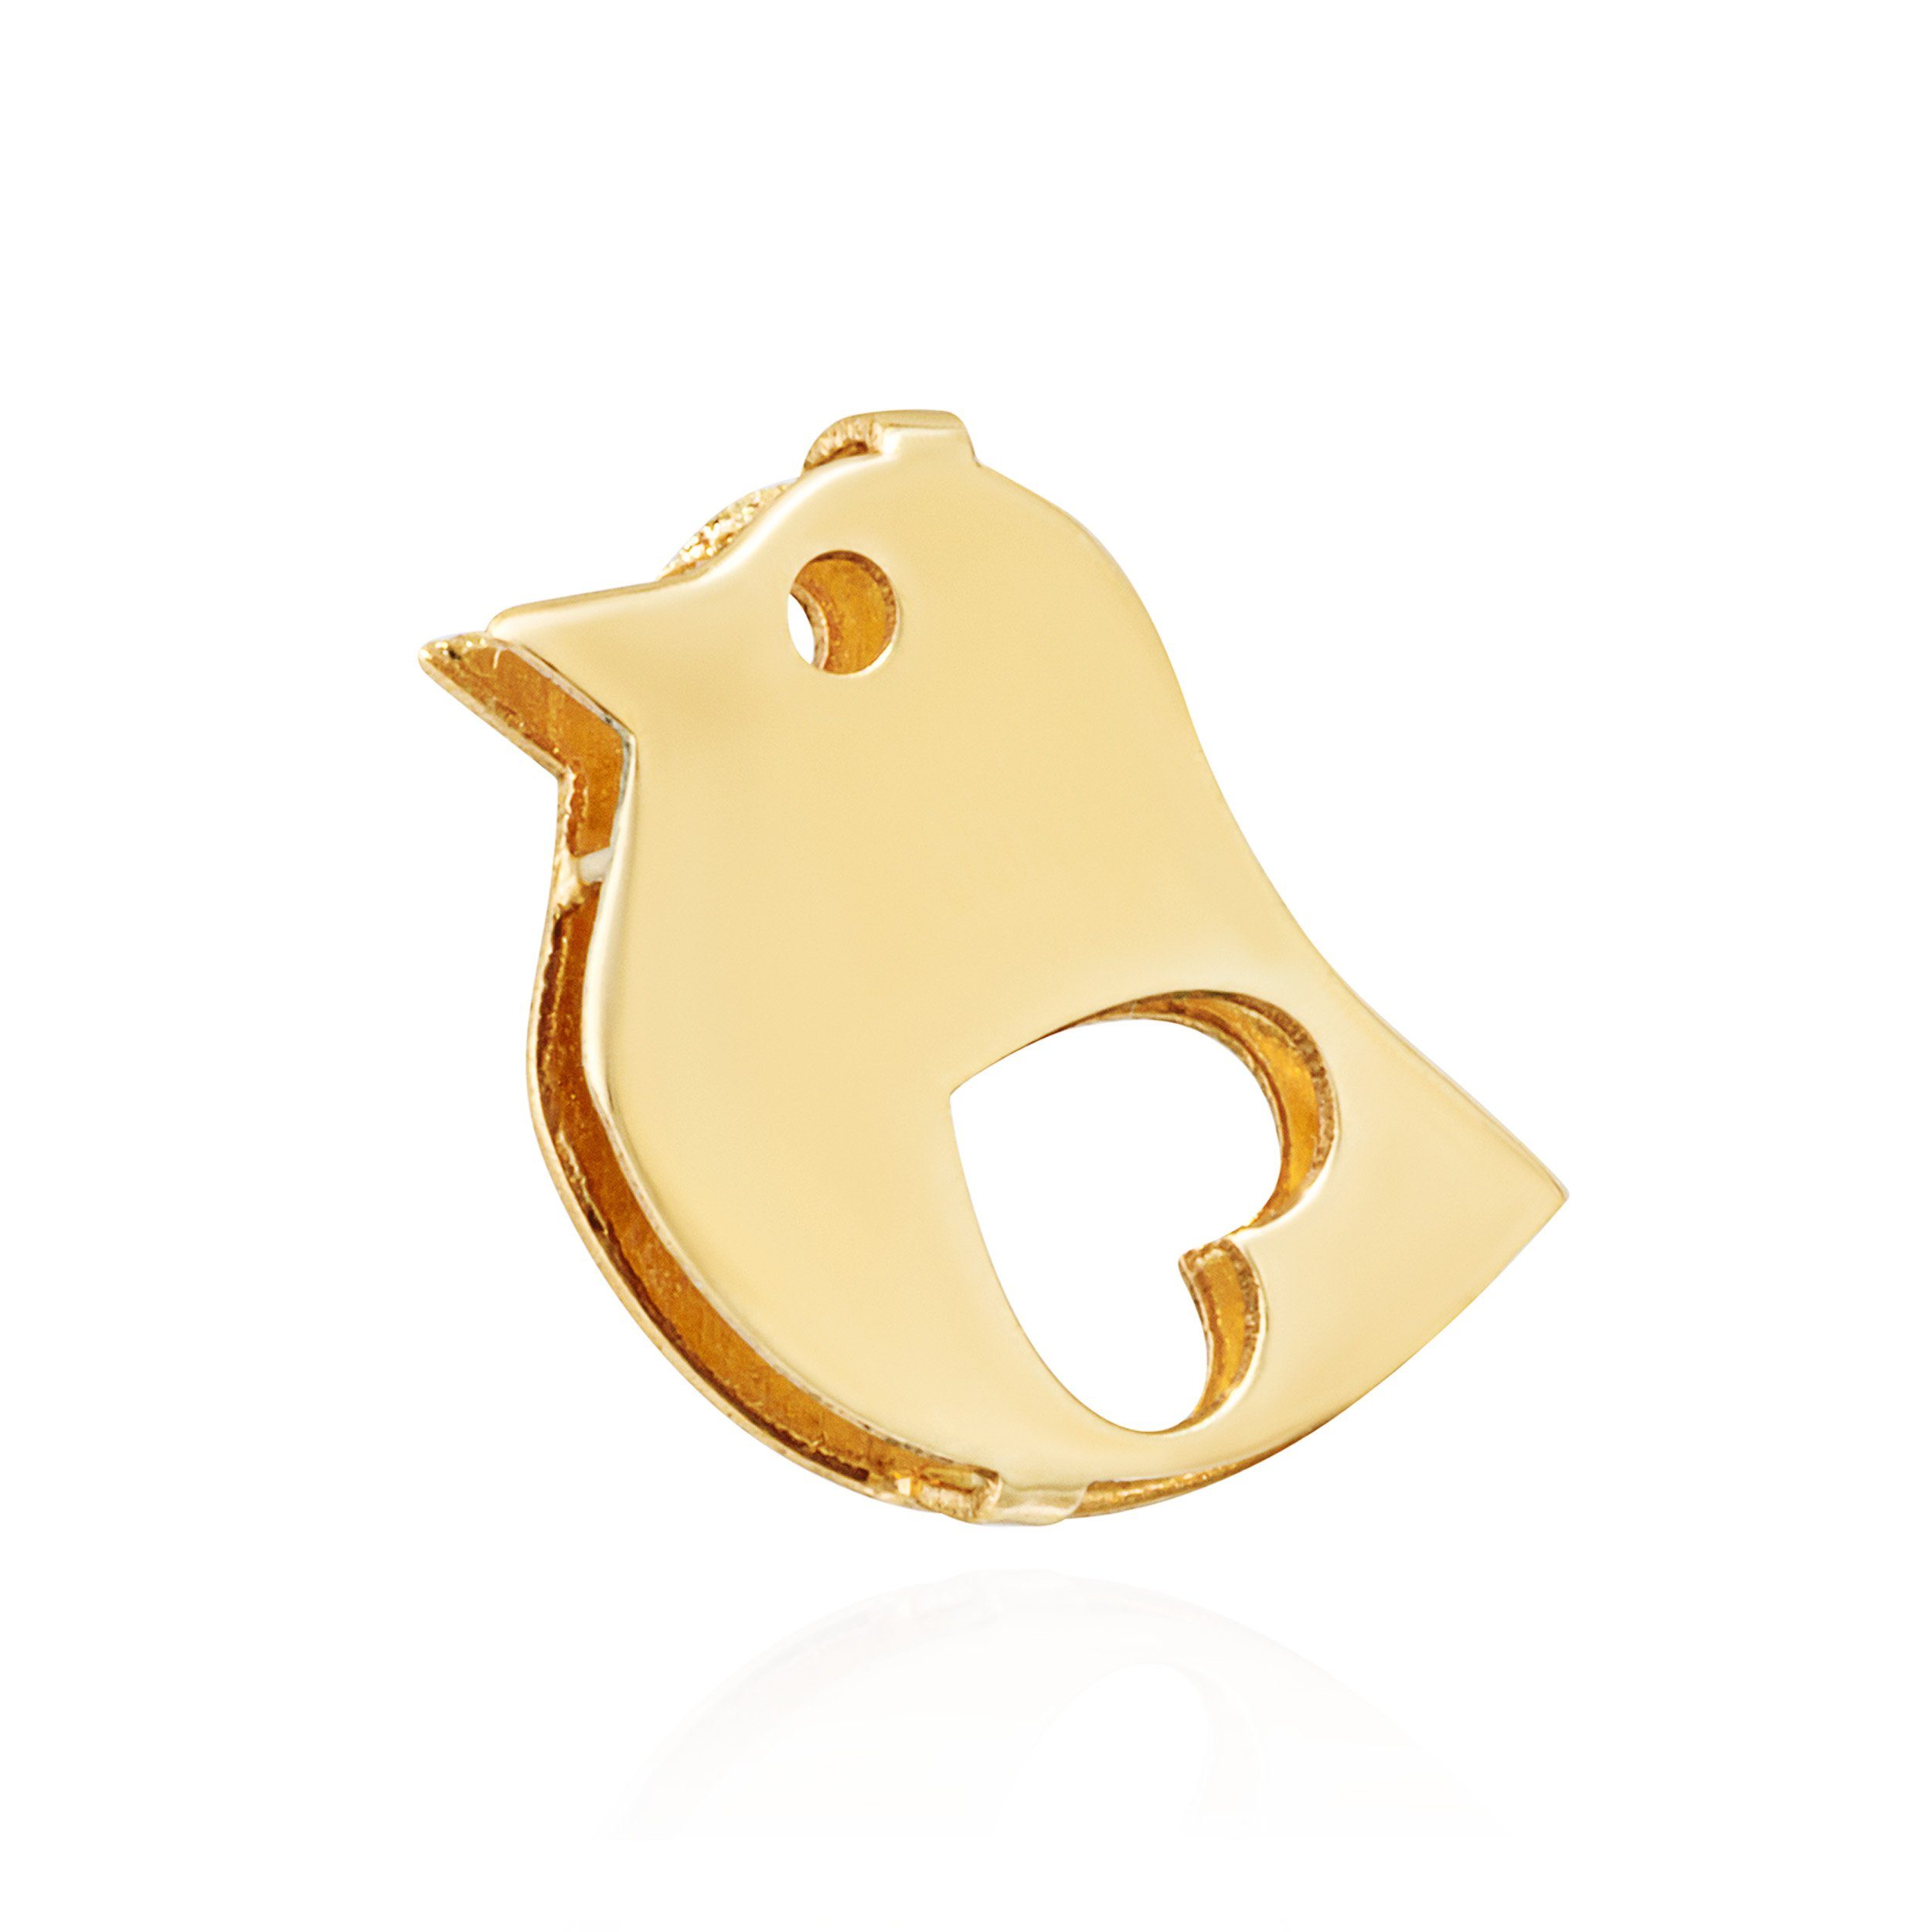 Amulett Karat Kettenanhänger Vogel Kettenanhänger 333 11,5x8,5mm Gelb gold 8 NKlaus Anhänger